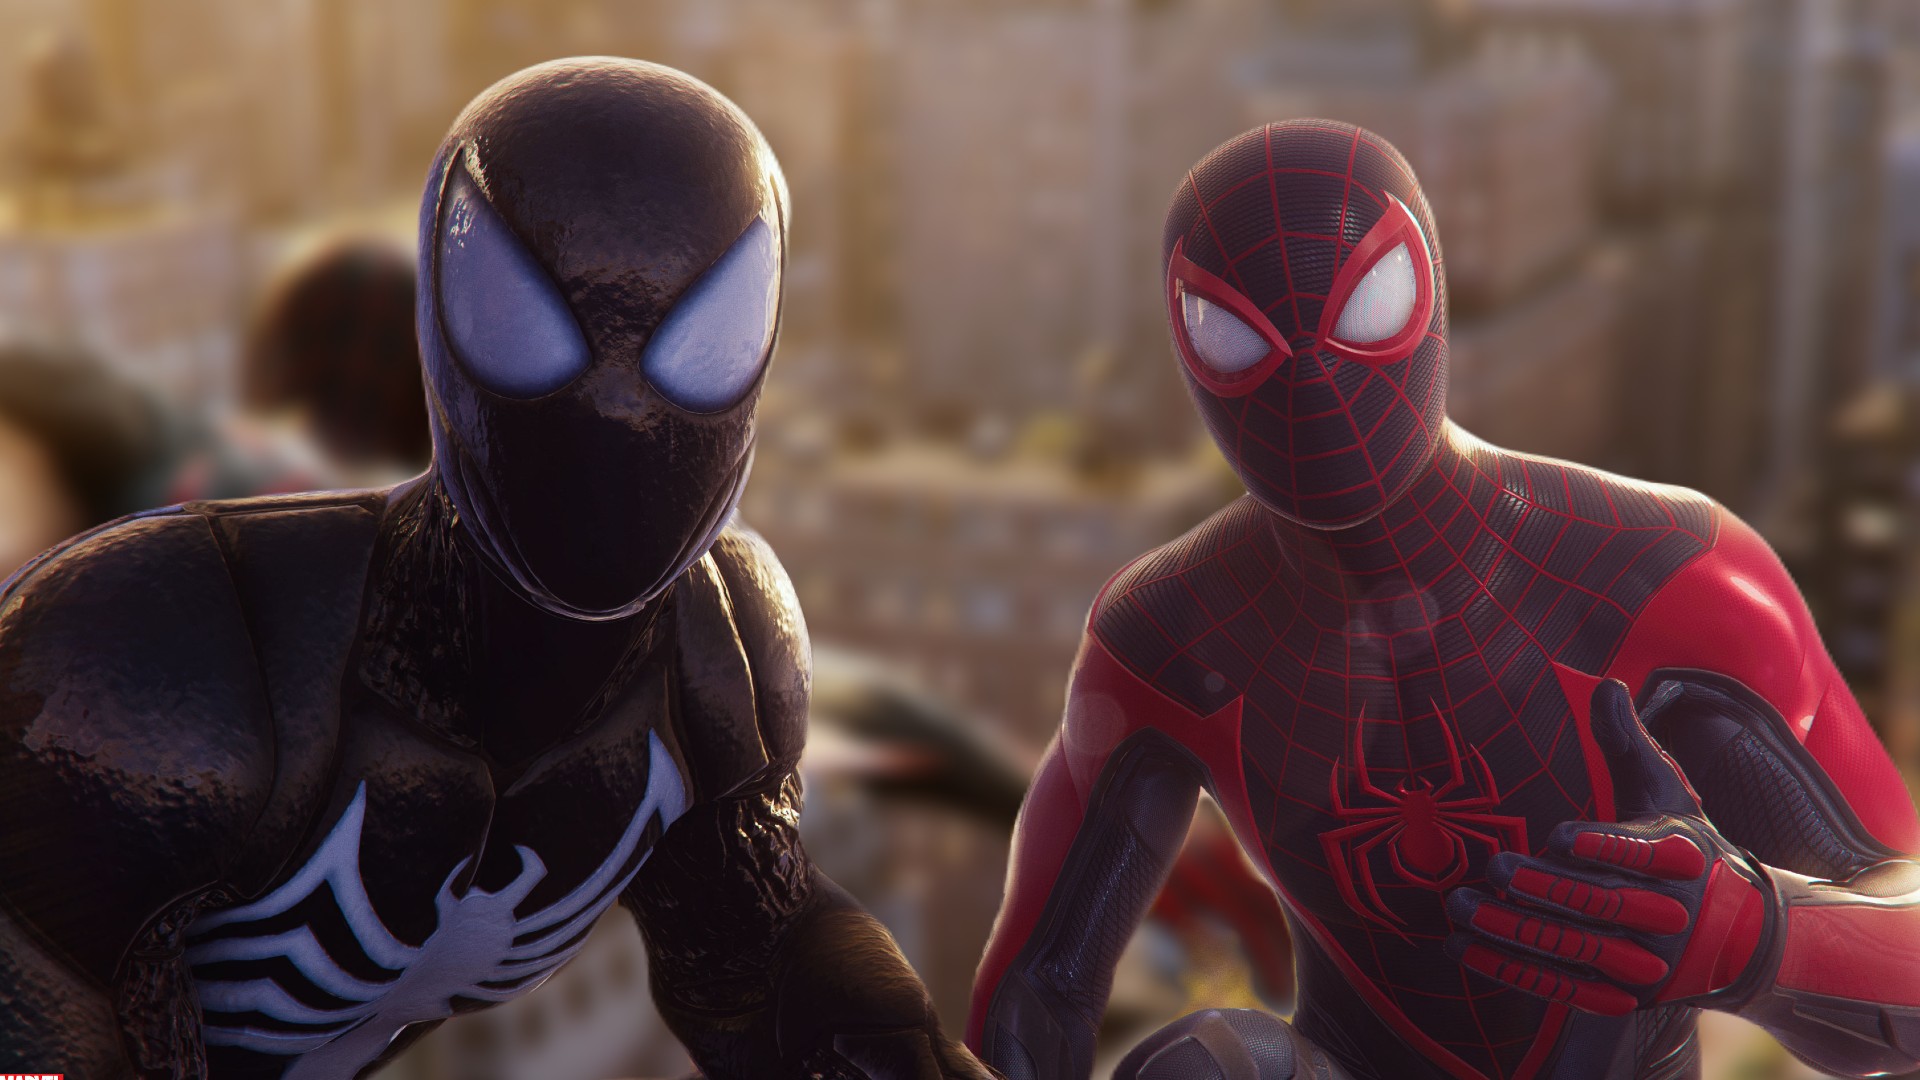 udrydde Broom FALSK Spider-Man 2 PS5 release date, story, gameplay | The Loadout